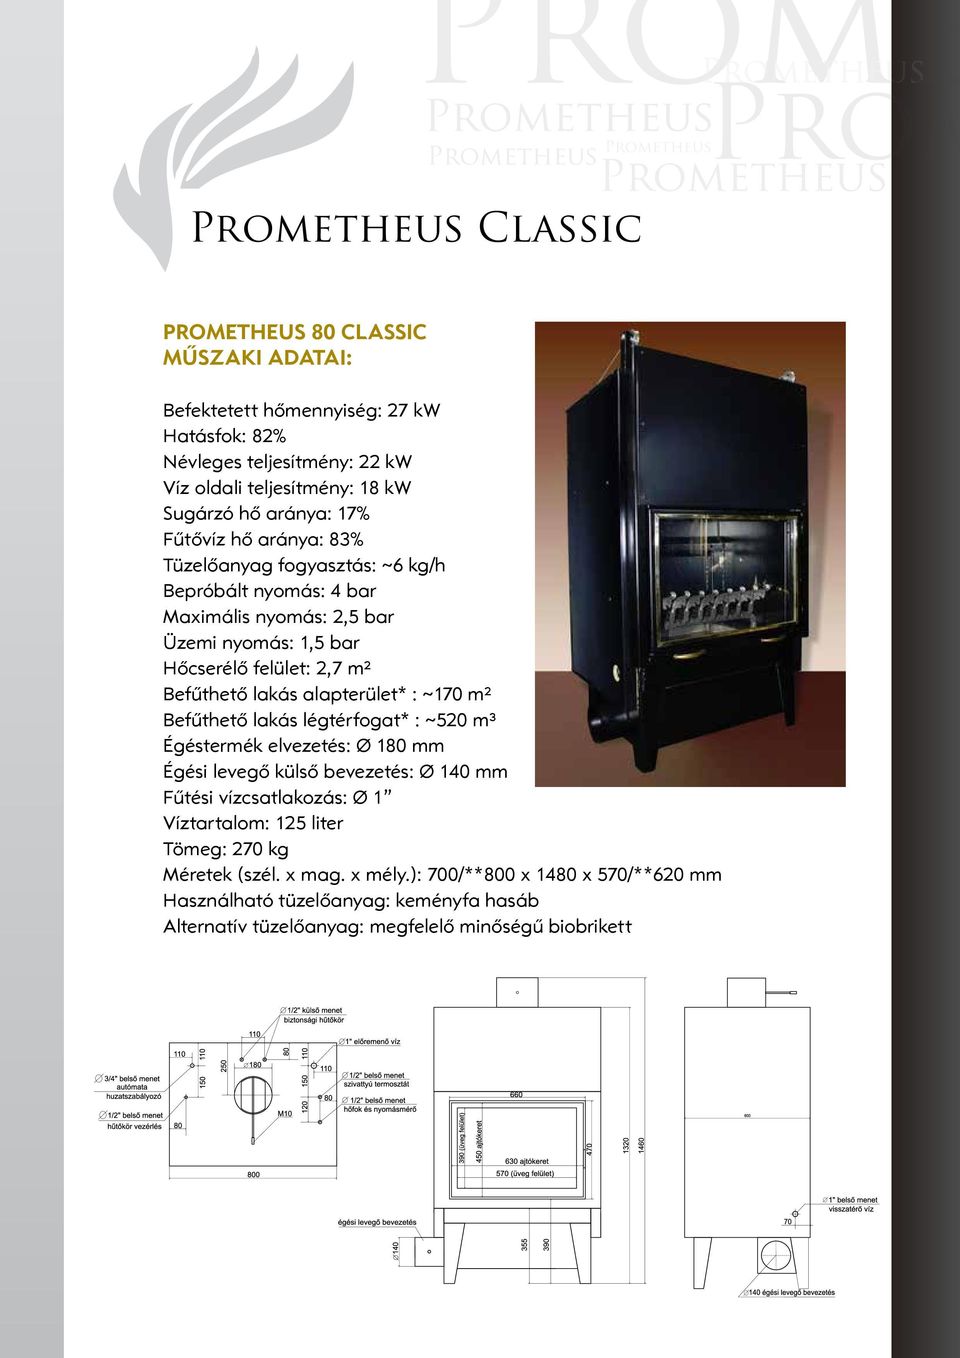 Prometheus Prom KANDALLÓ TŰZTÉR KATALÓGUS. Prometheus. kandallókazán - PDF  Ingyenes letöltés